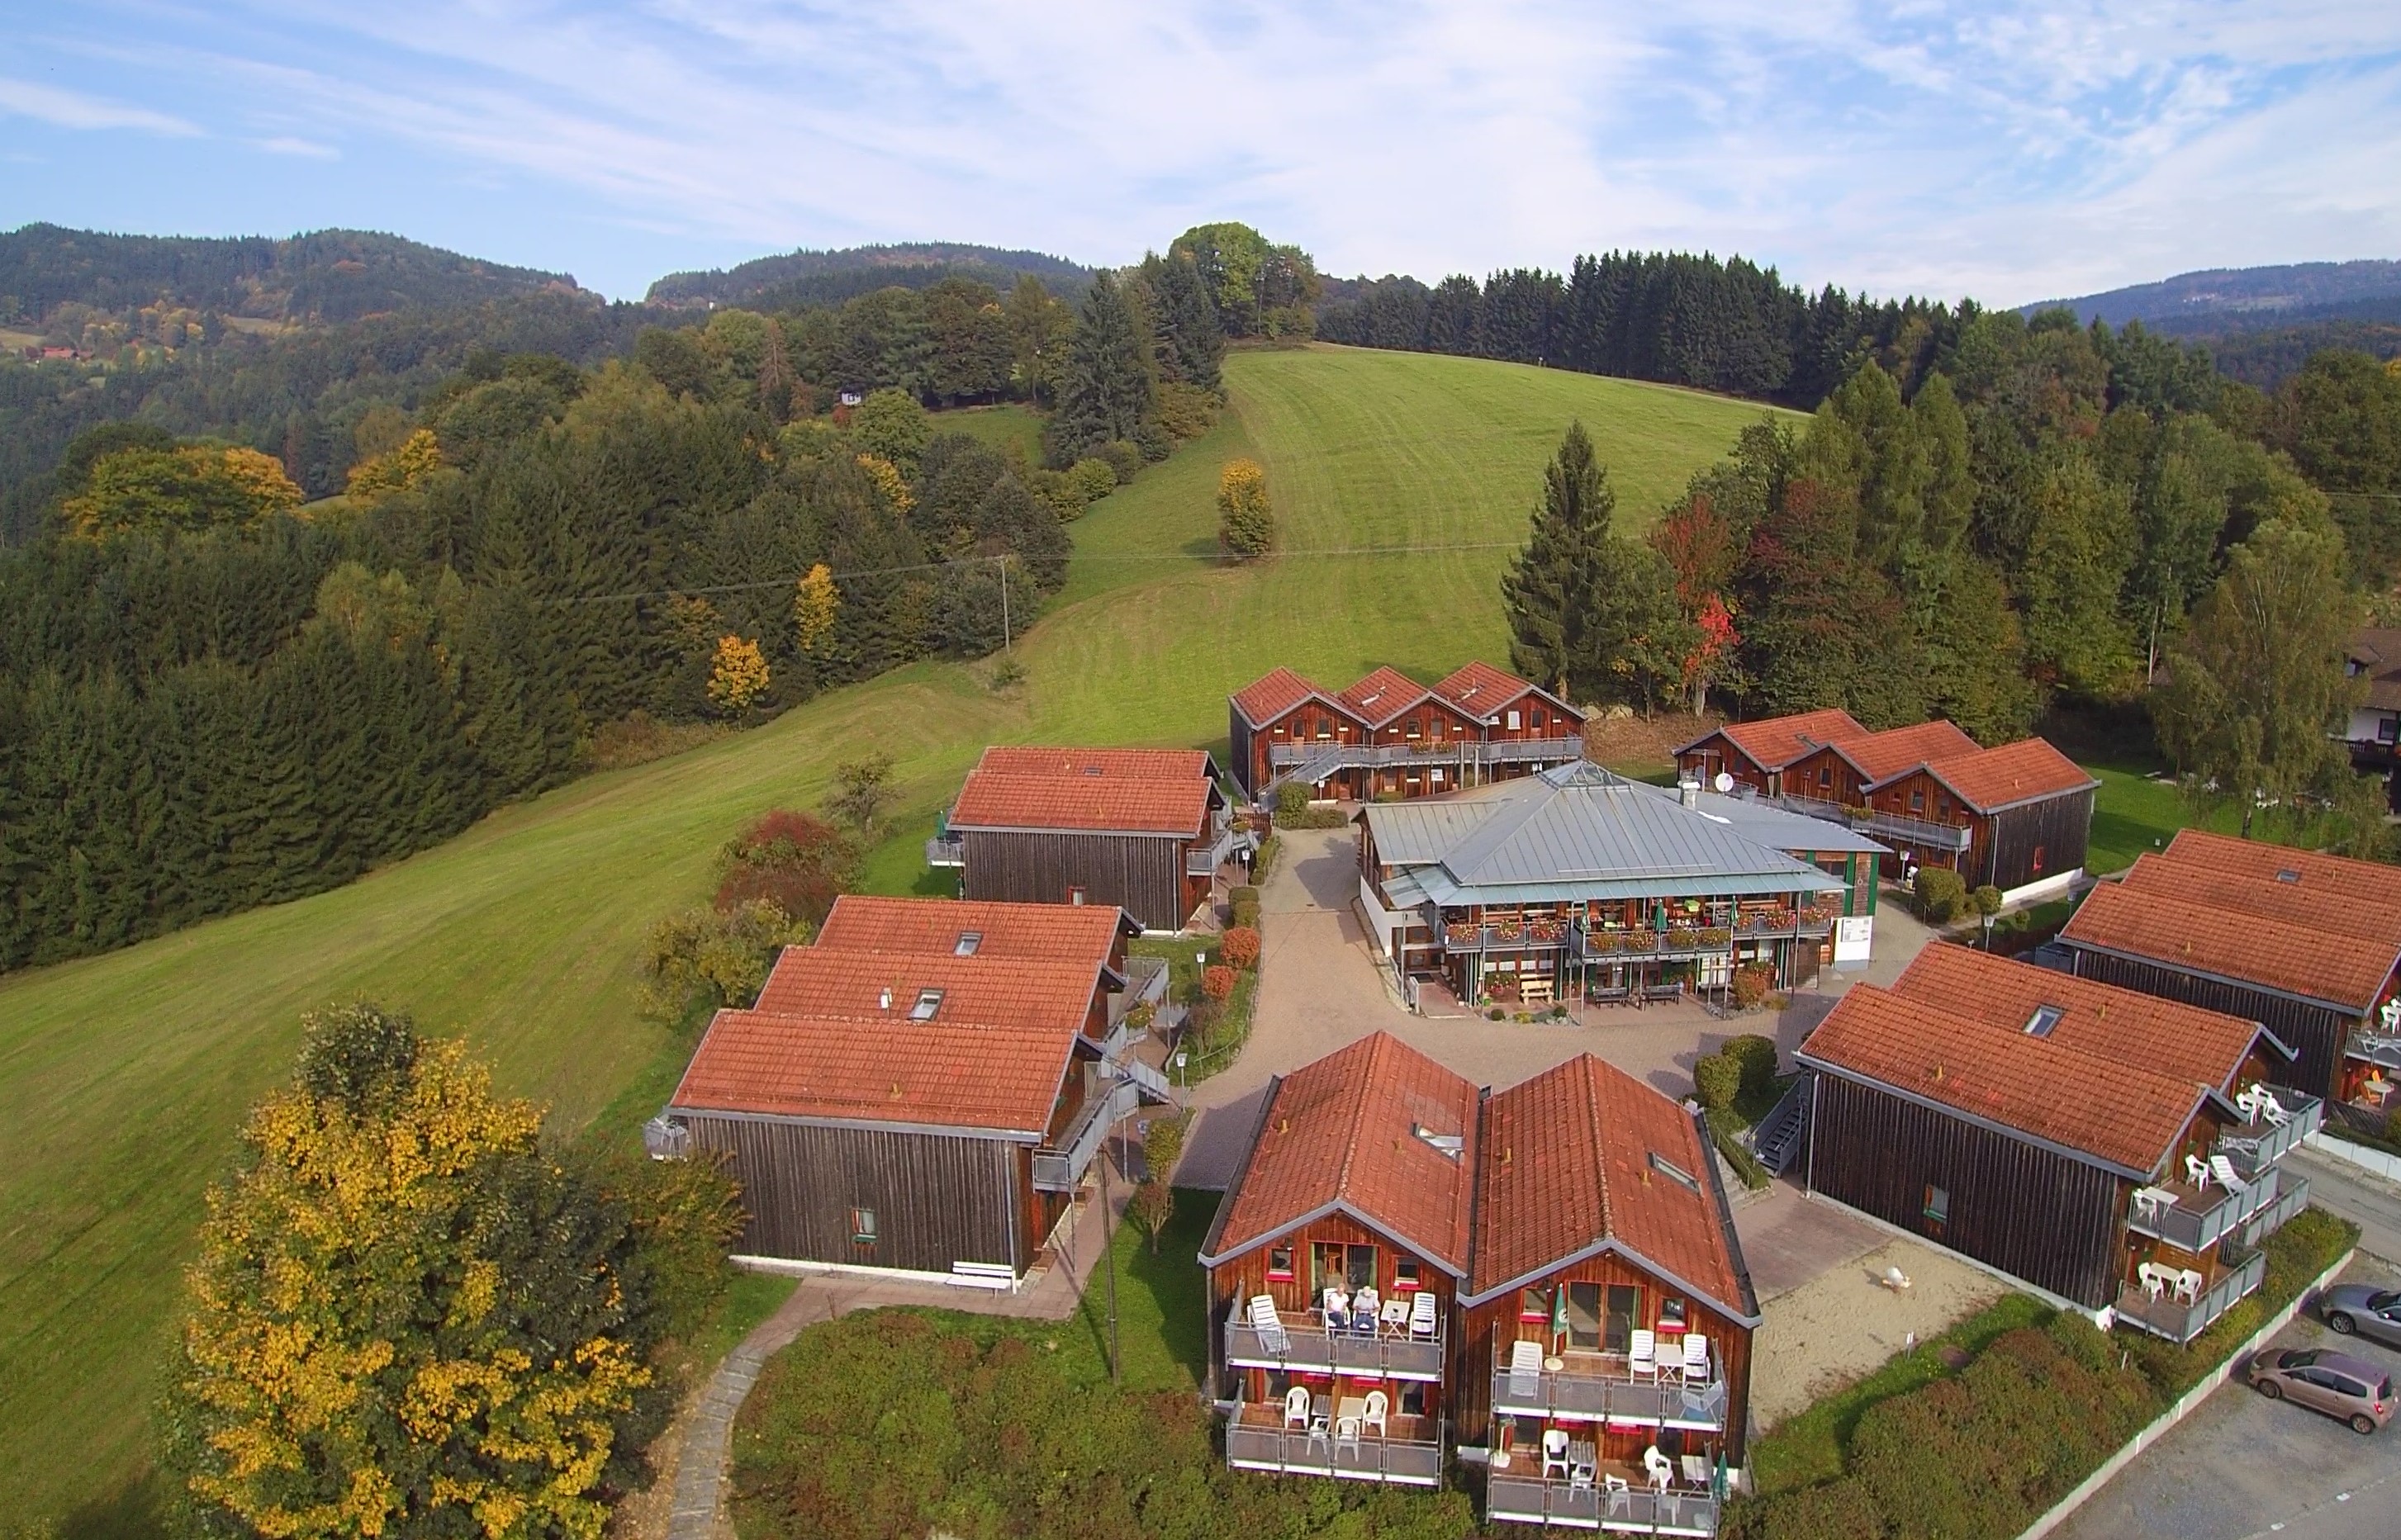 Luftbildaufnahme des Village Hotels Bayerischer Wald. Um das Hauptgebäude in der Mitte gruppieren sich mehrere Gebäude mit Holzverkleidung. In diesen befinden sich die Zimmer.